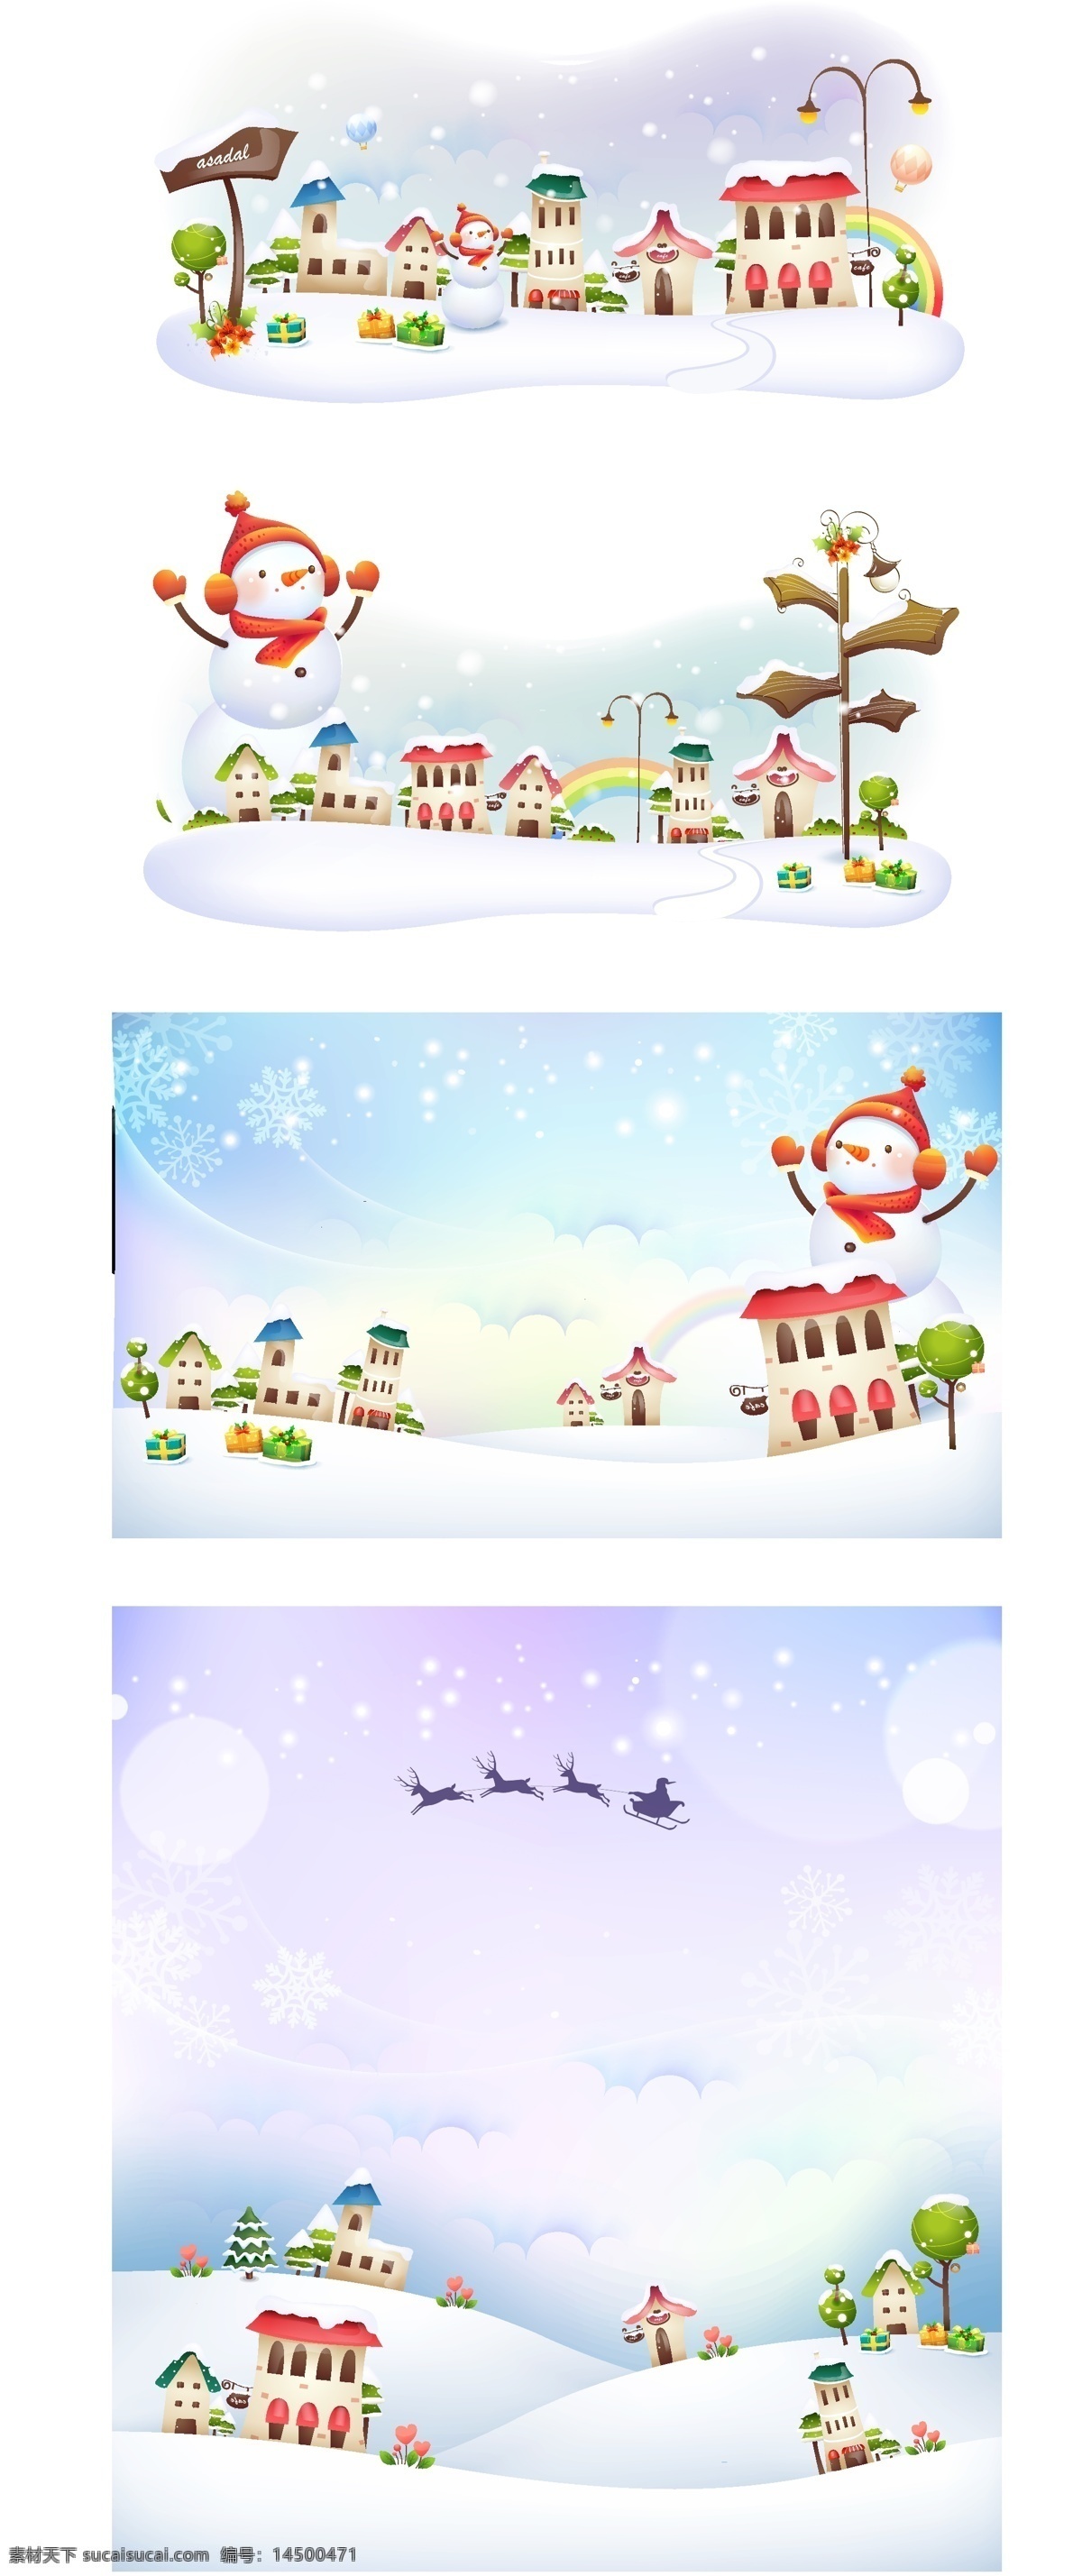 美丽的雪景 矢量素材 矢量背景 白色 冬天 雪景 雪人 下雪 圣诞 雪花 小房子 卡通背景 礼物